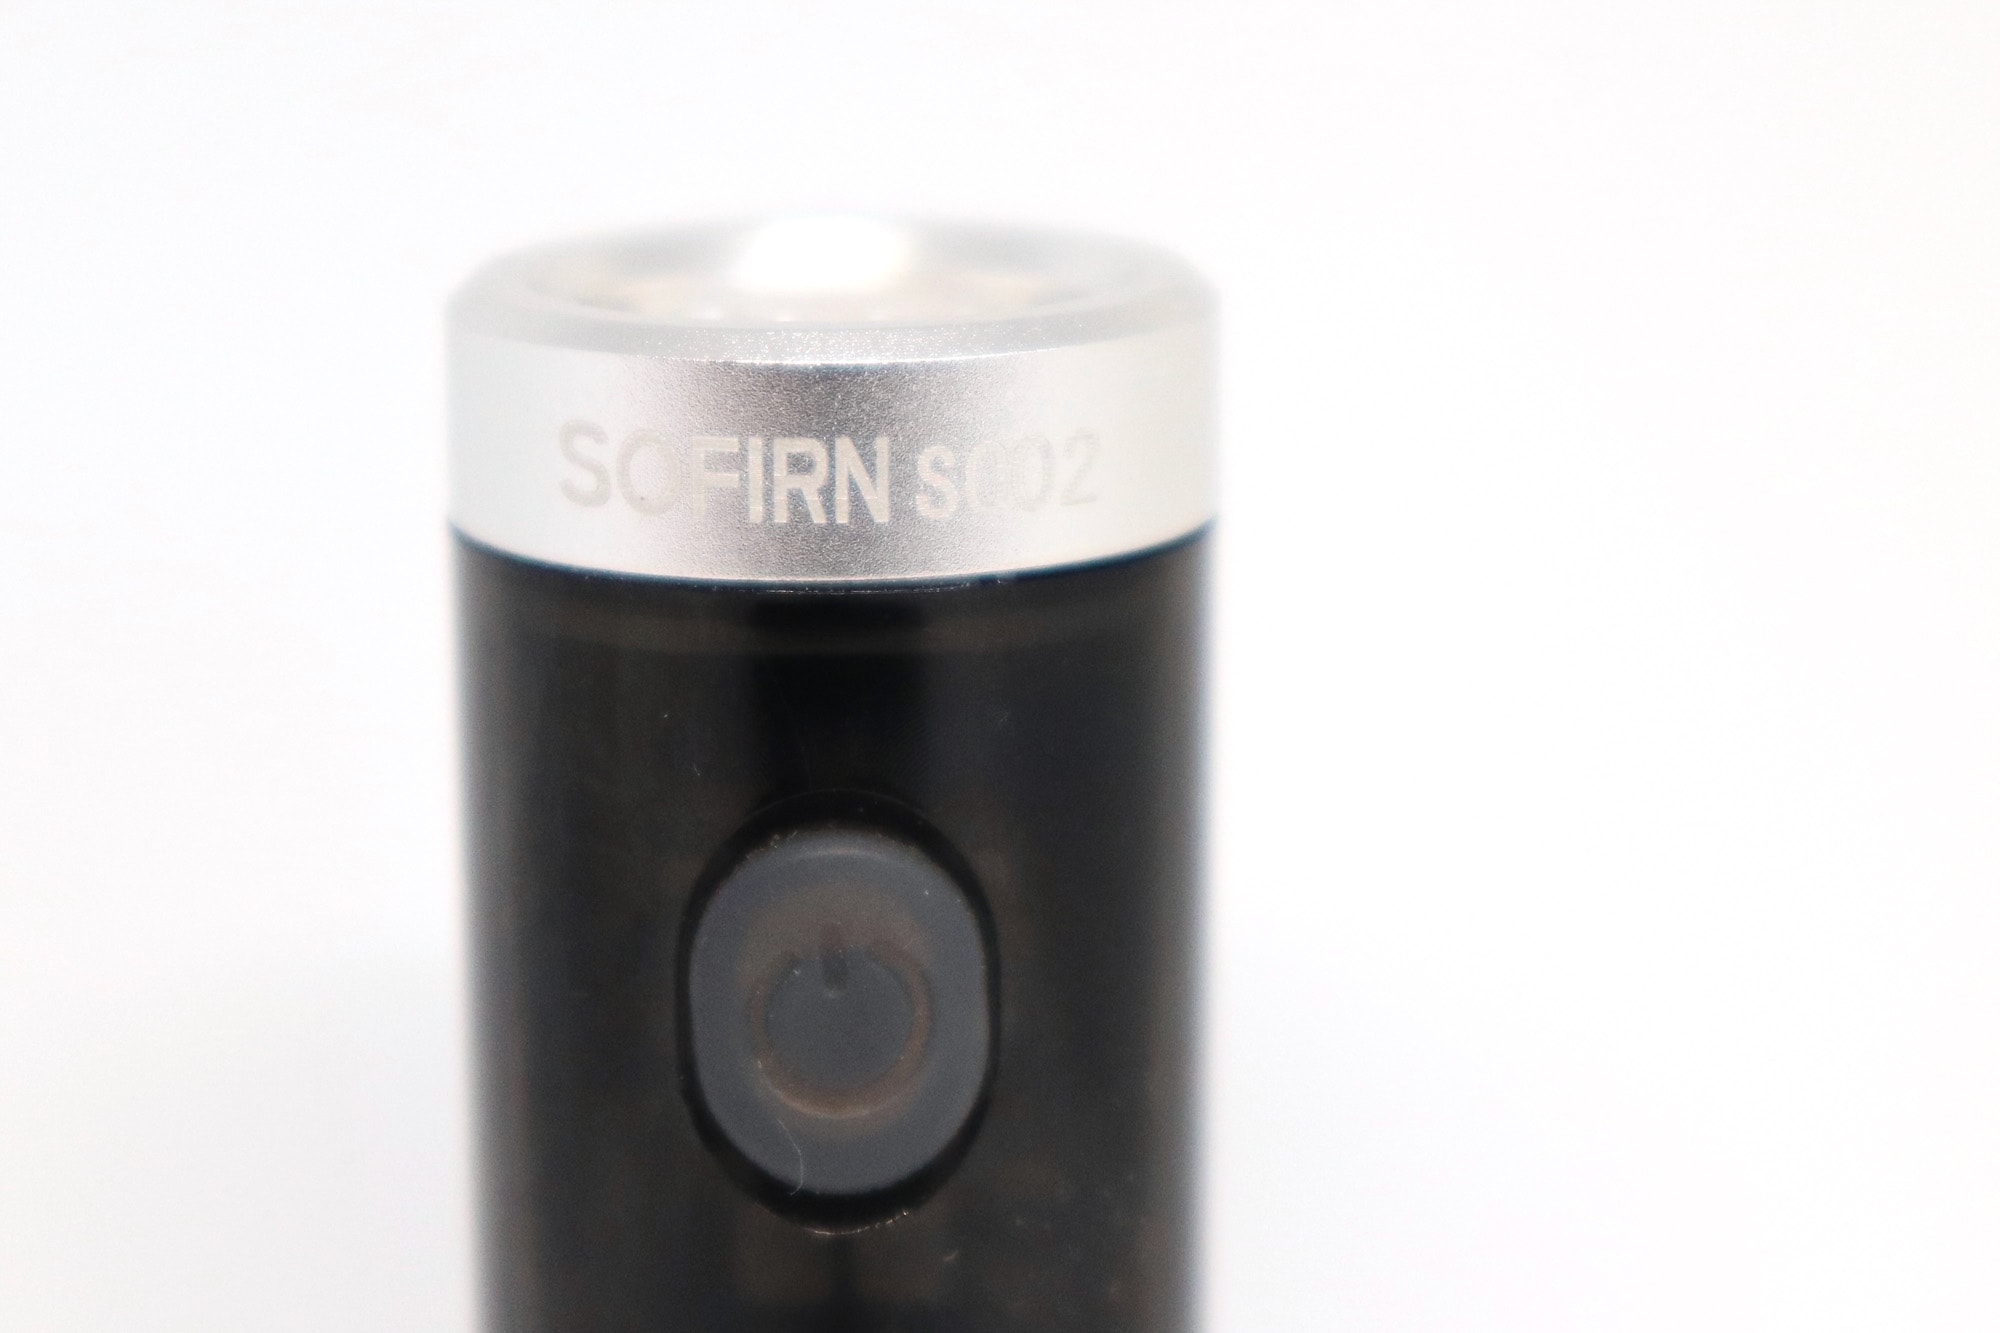 sofirn sc02 switch